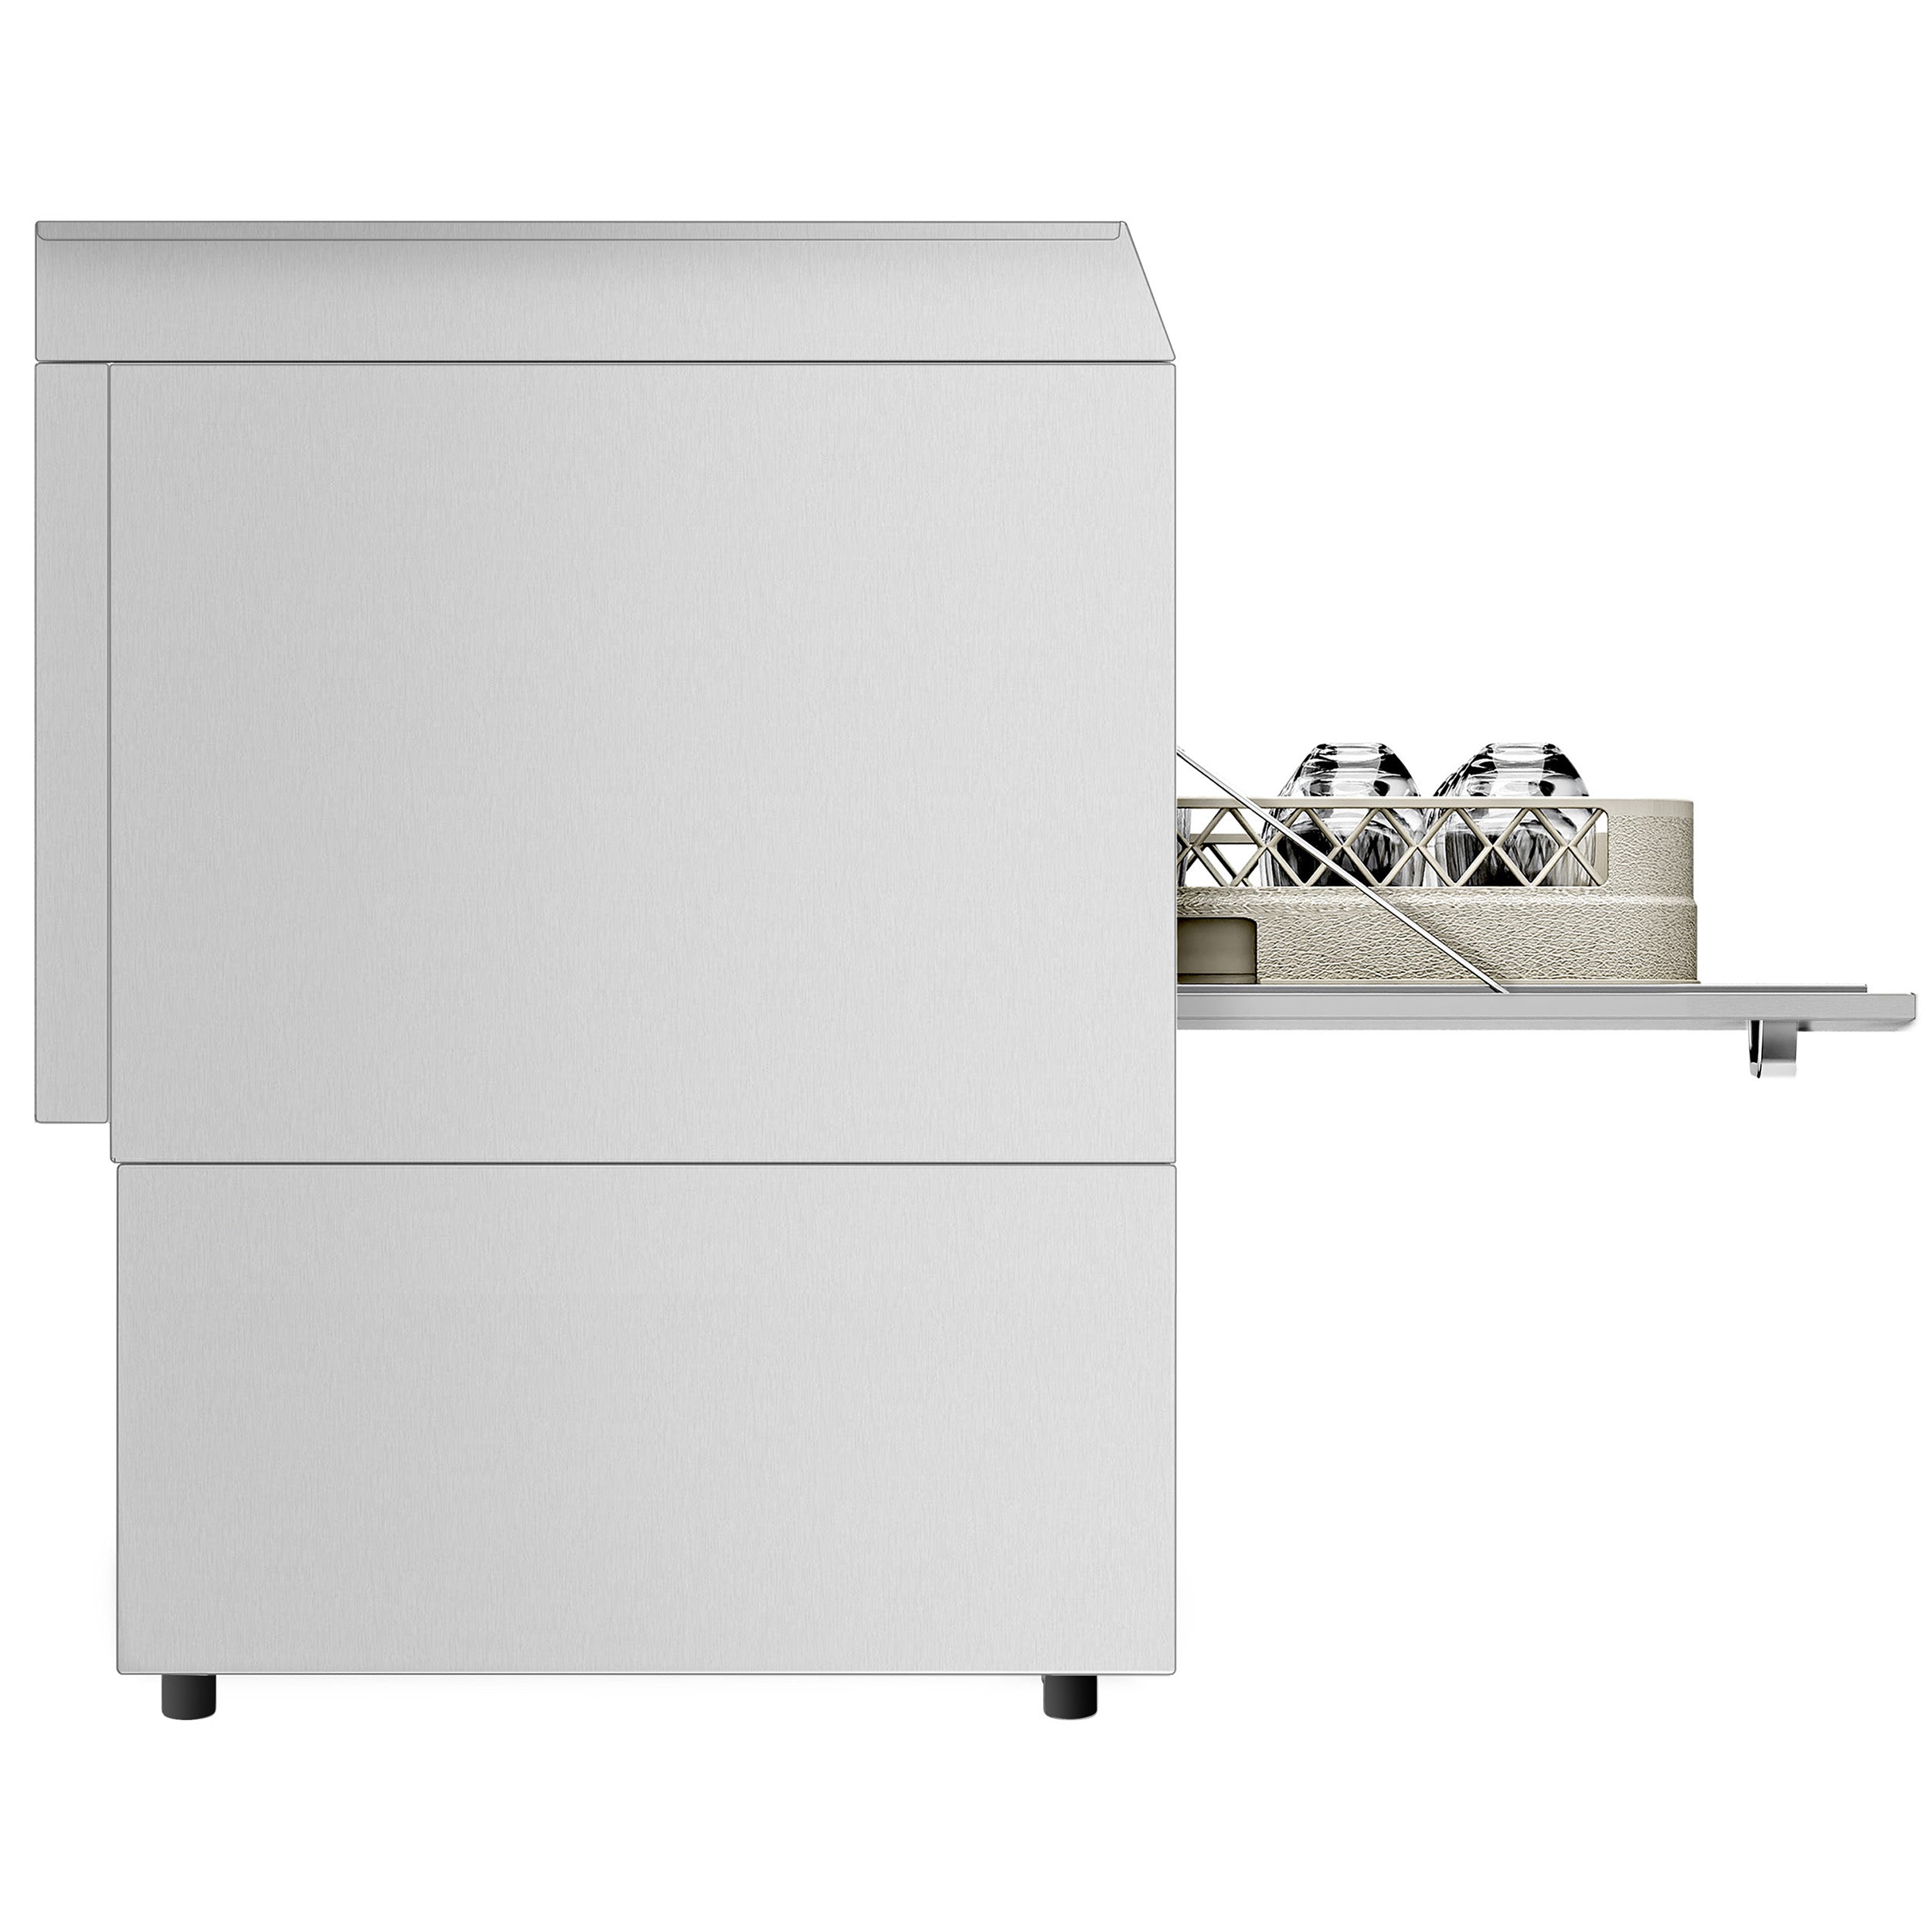 Oppvaskmaskin - Digital - 3,55 kW - med oppvaskmiddel, skyllemiddel og lutpumpe